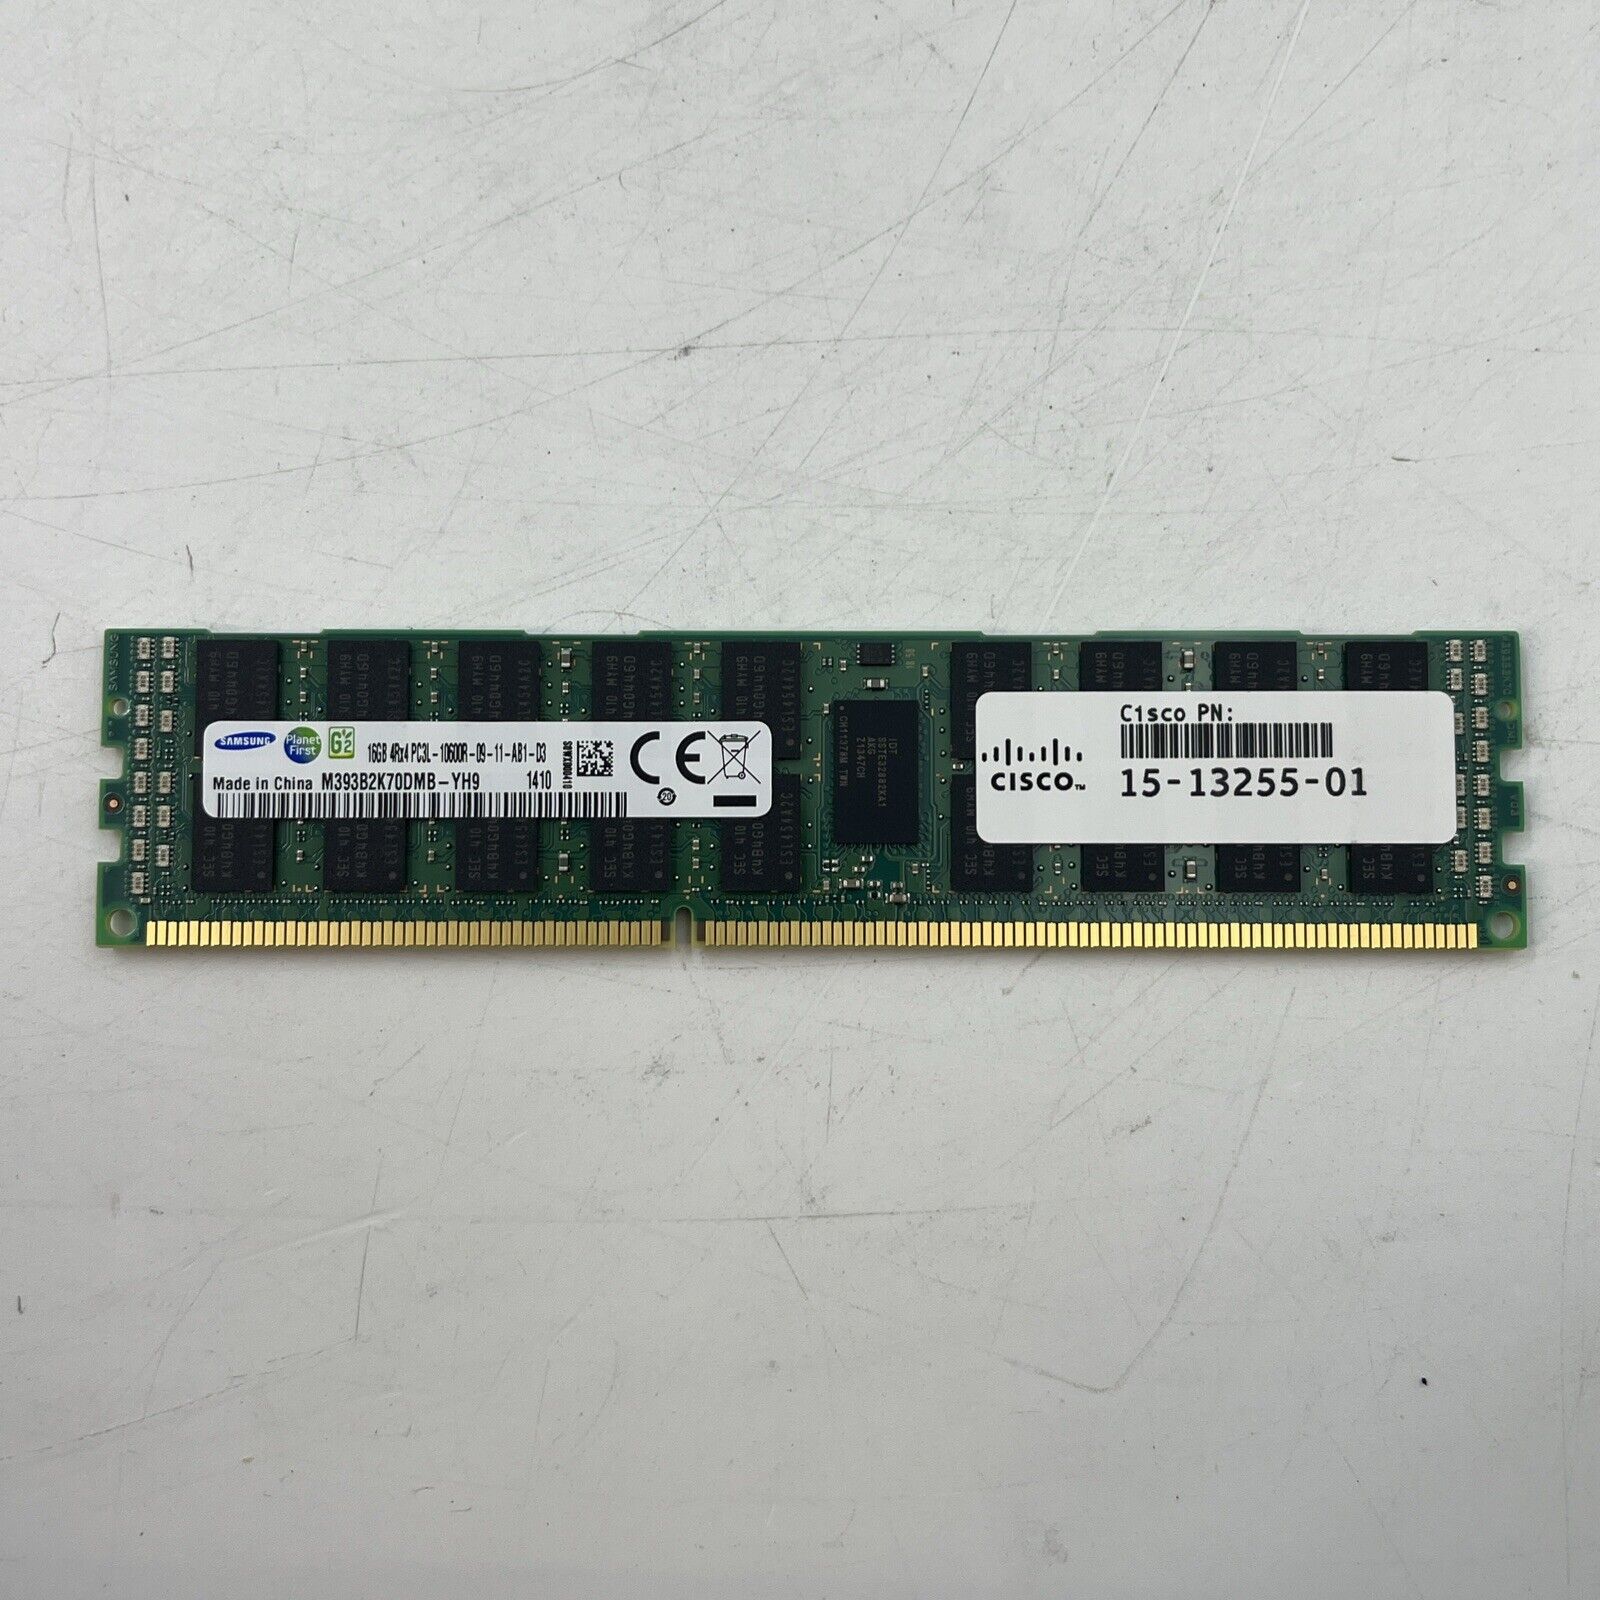 LOT OF 32 Samsung 16GB 4RX4 PC3L -10600R SERVER RAM #2